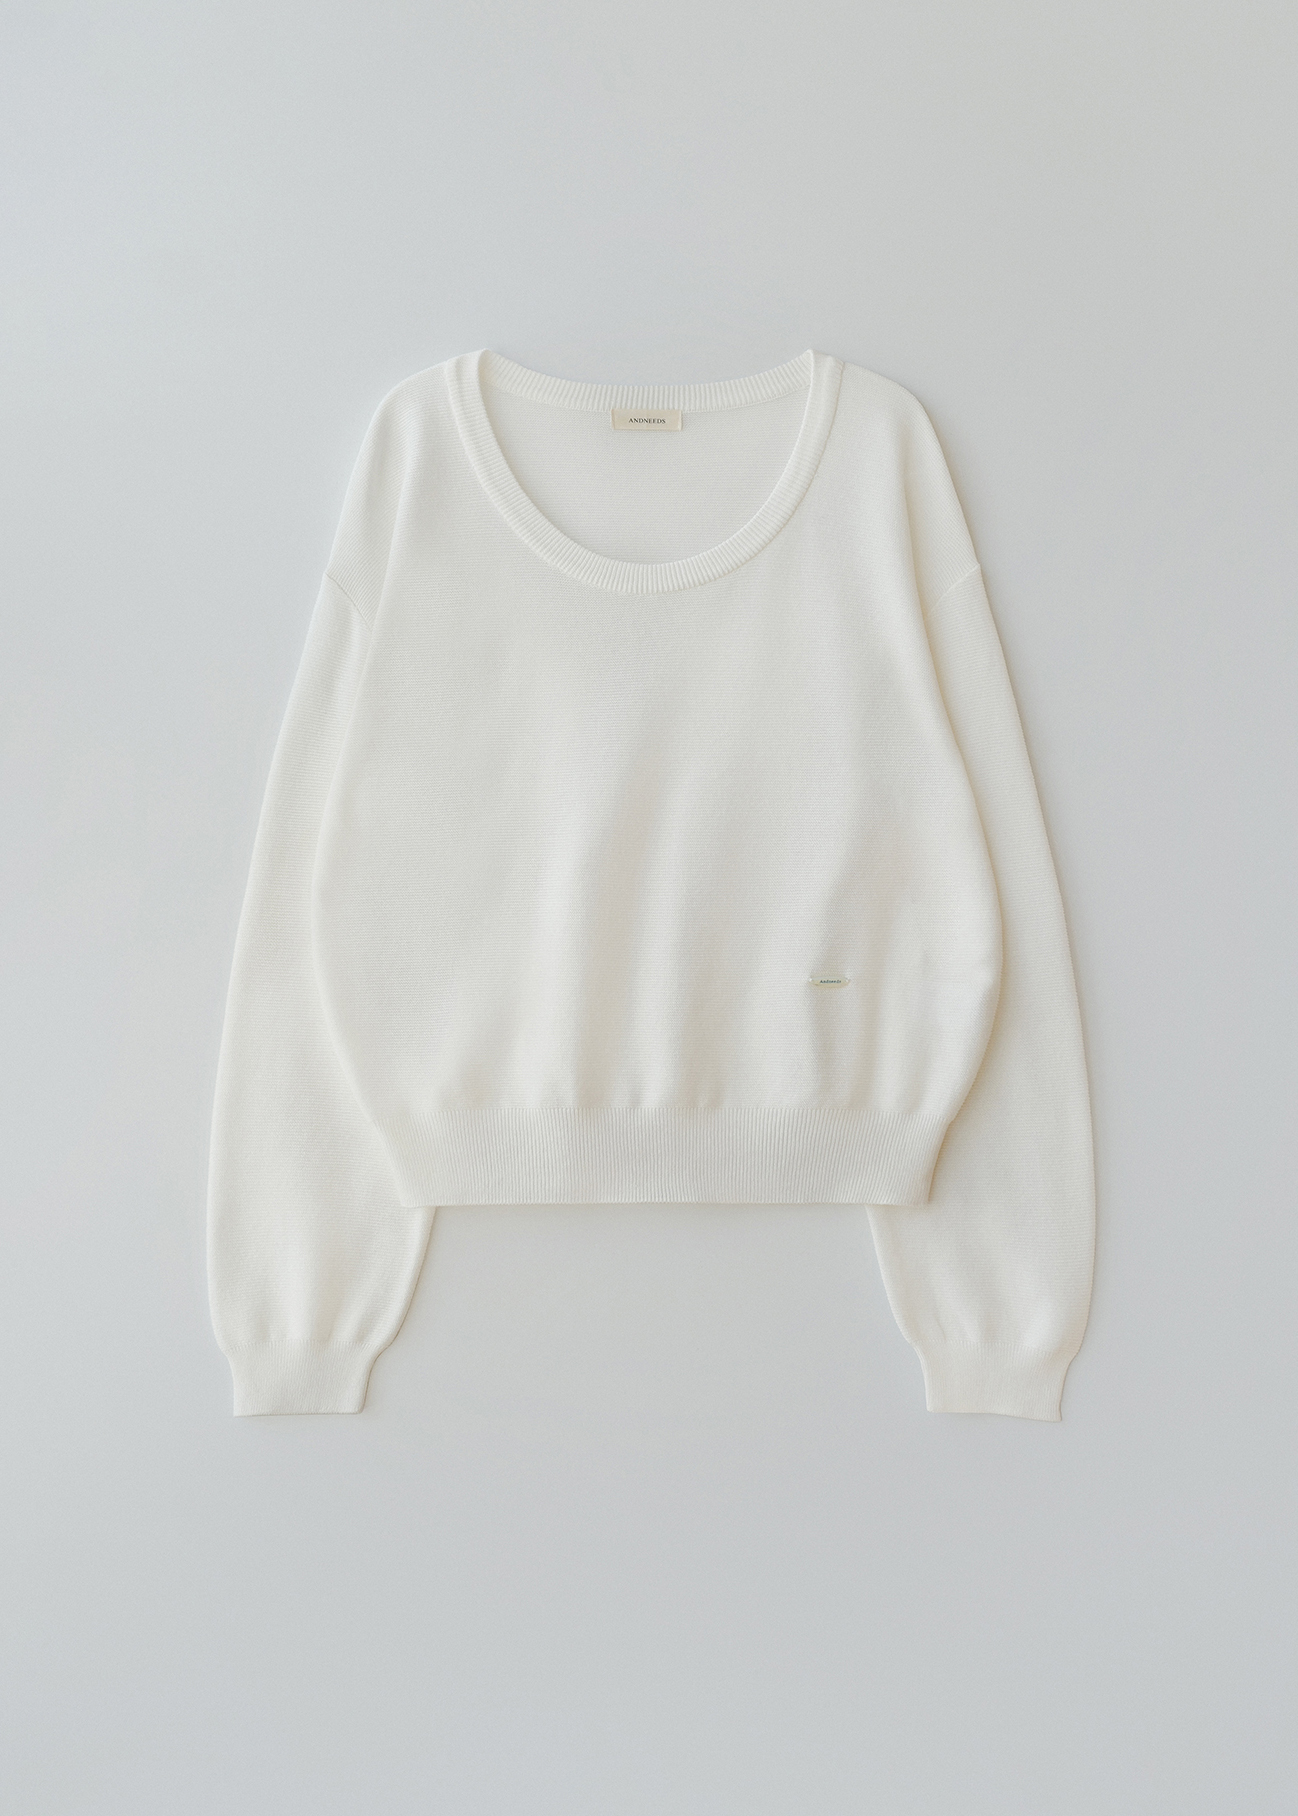 Scoop u-neck knit (white)